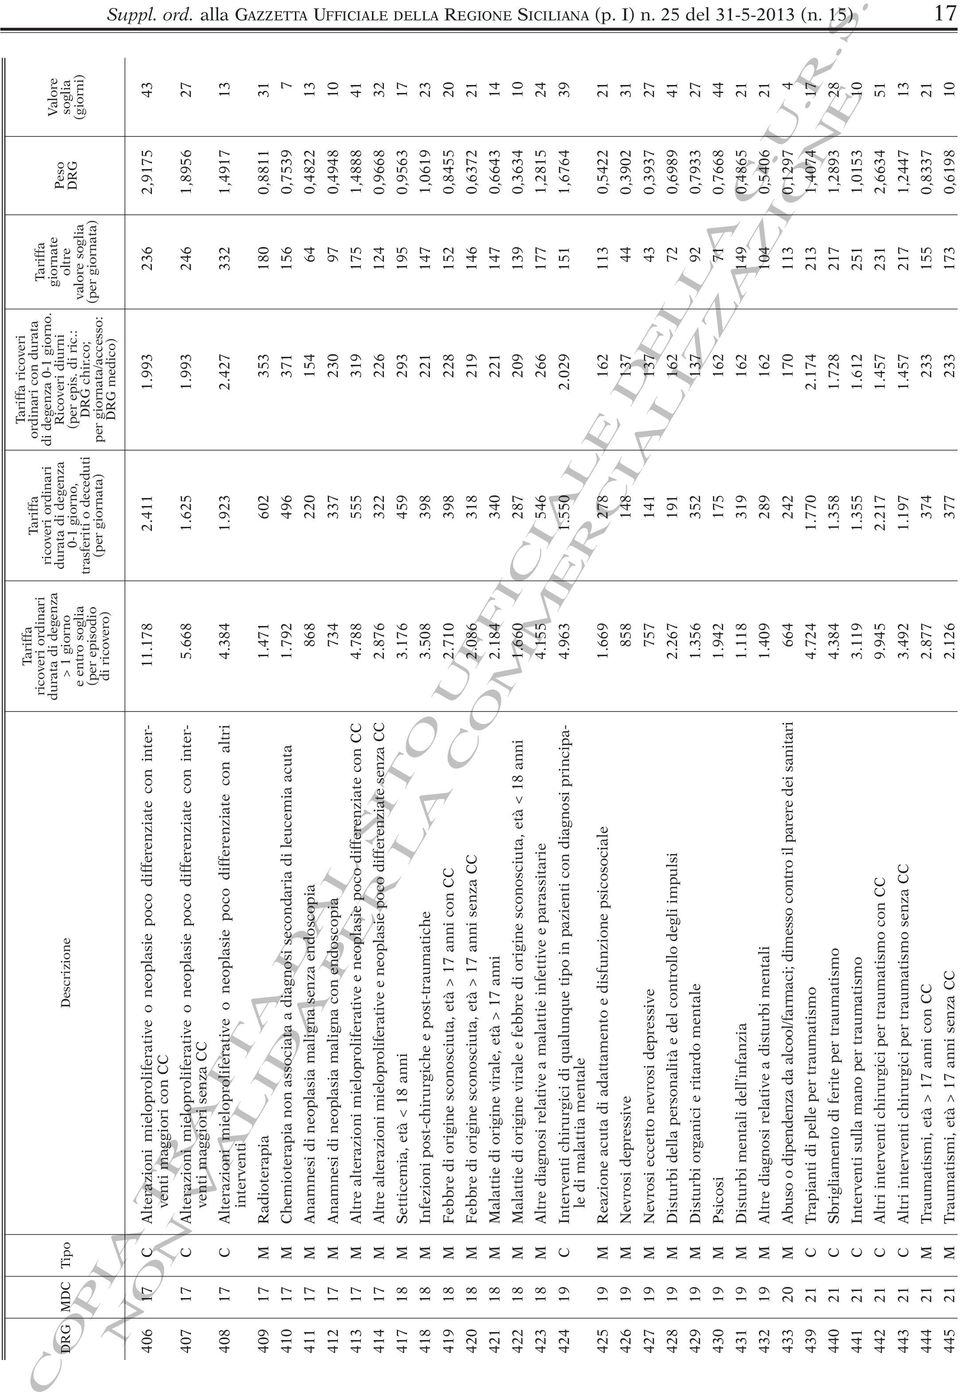 di ricovero) Descrizione Tipo DRG MDC Suppl. ord. alla GAZZETTA UFFICIALE DELLA REGIONE SICILIANA (p. I) n. 25 del 31-5-2013 (n.